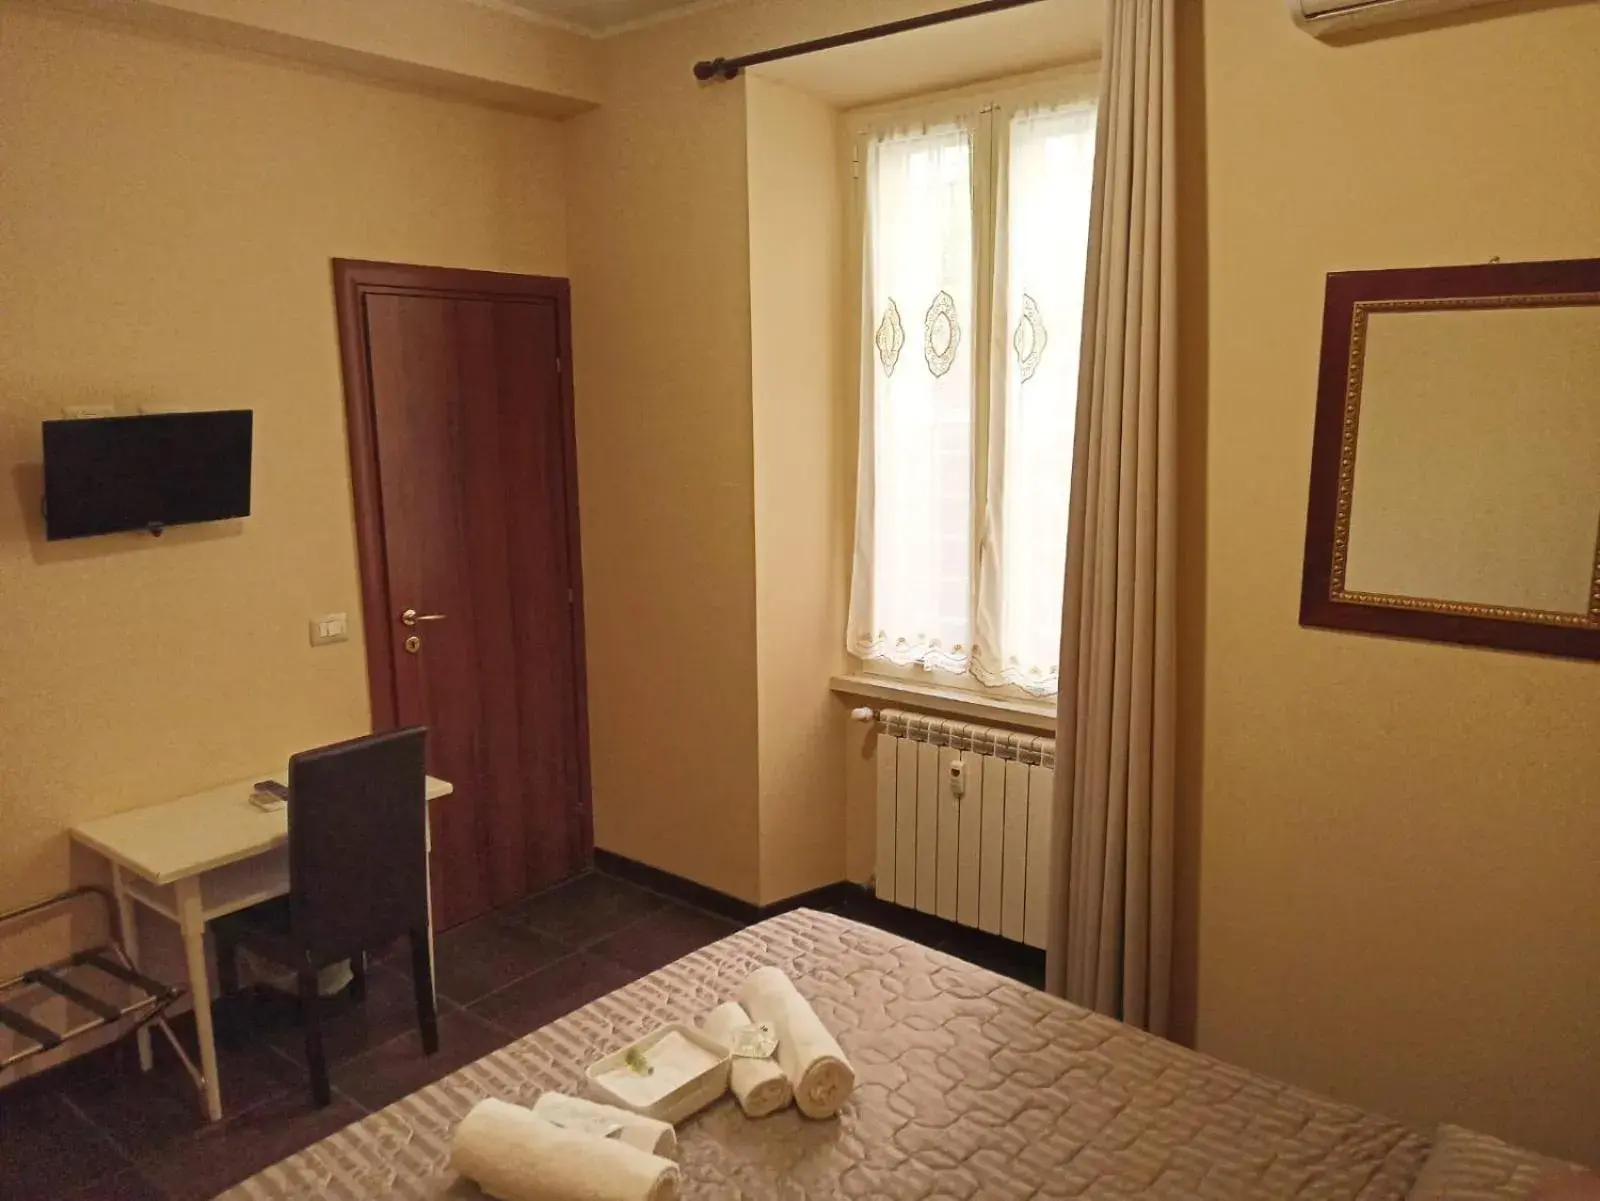 Bedroom, Bed in Domina Popolo